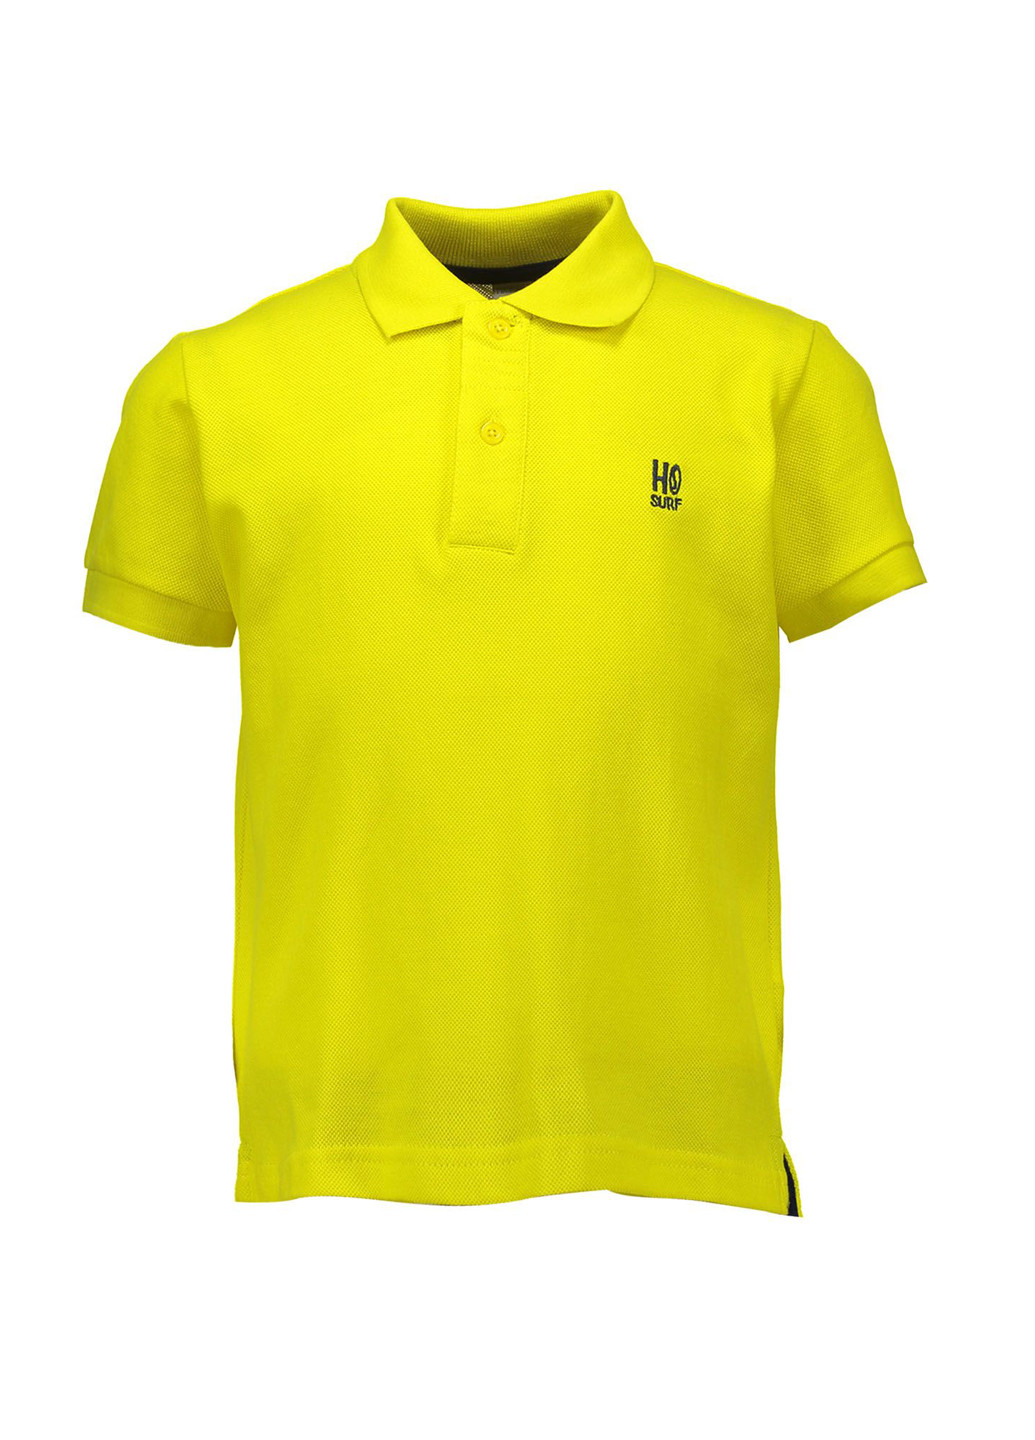 Желтая детская футболка-поло для мальчика Piazza Italia